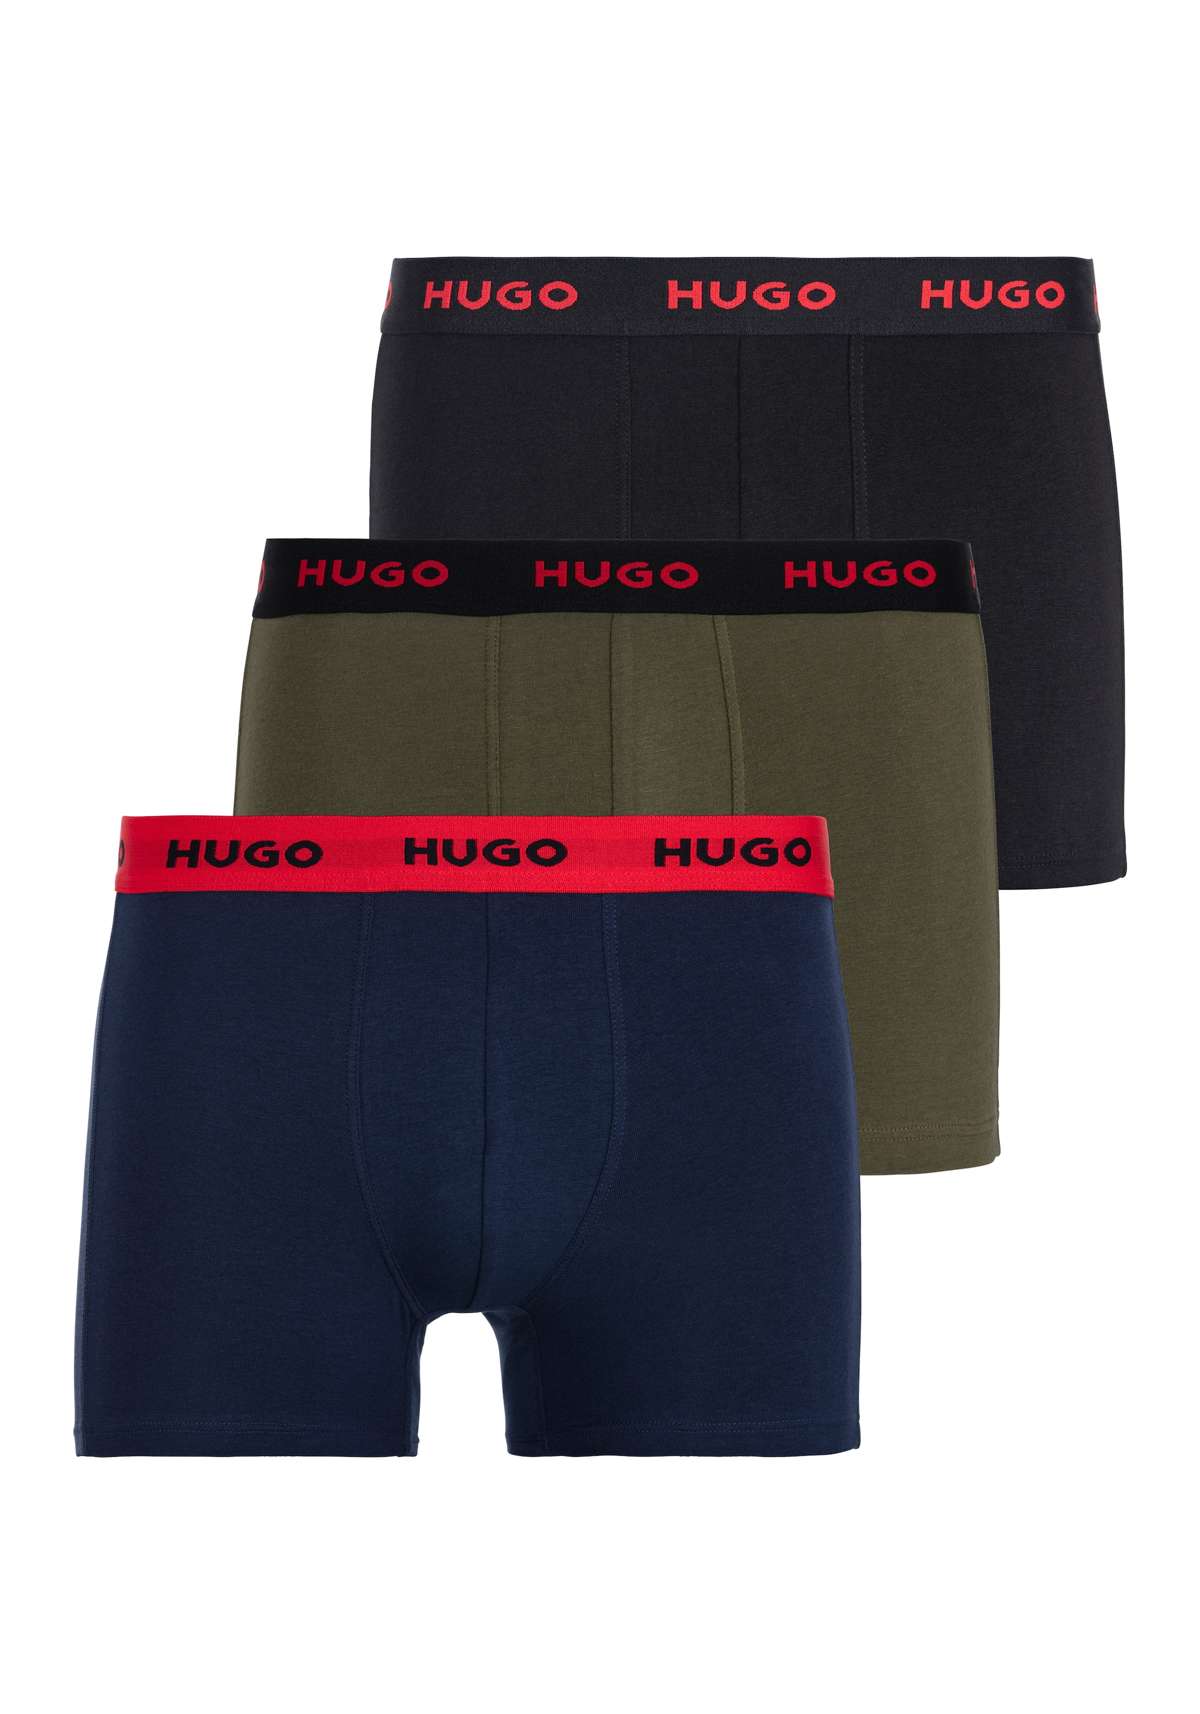 Чемодан, (упаковка, 3 шт.), с поясом с логотипом HUGO